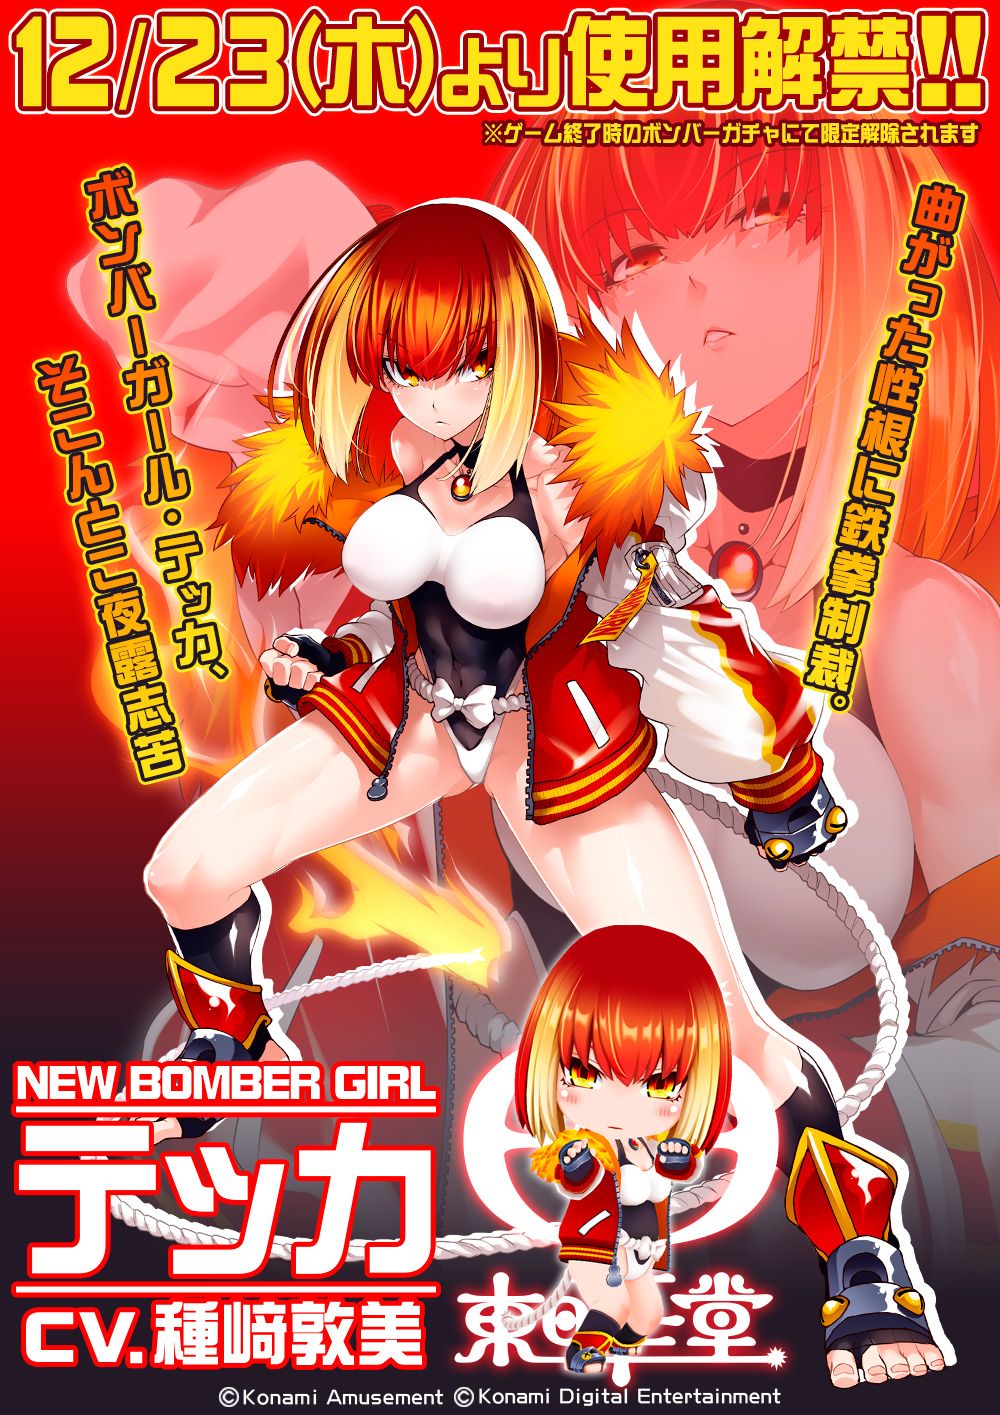 Bomber Girl Erotic new character girl Tekka with erotic muchimuchi and abnormal high leg 4